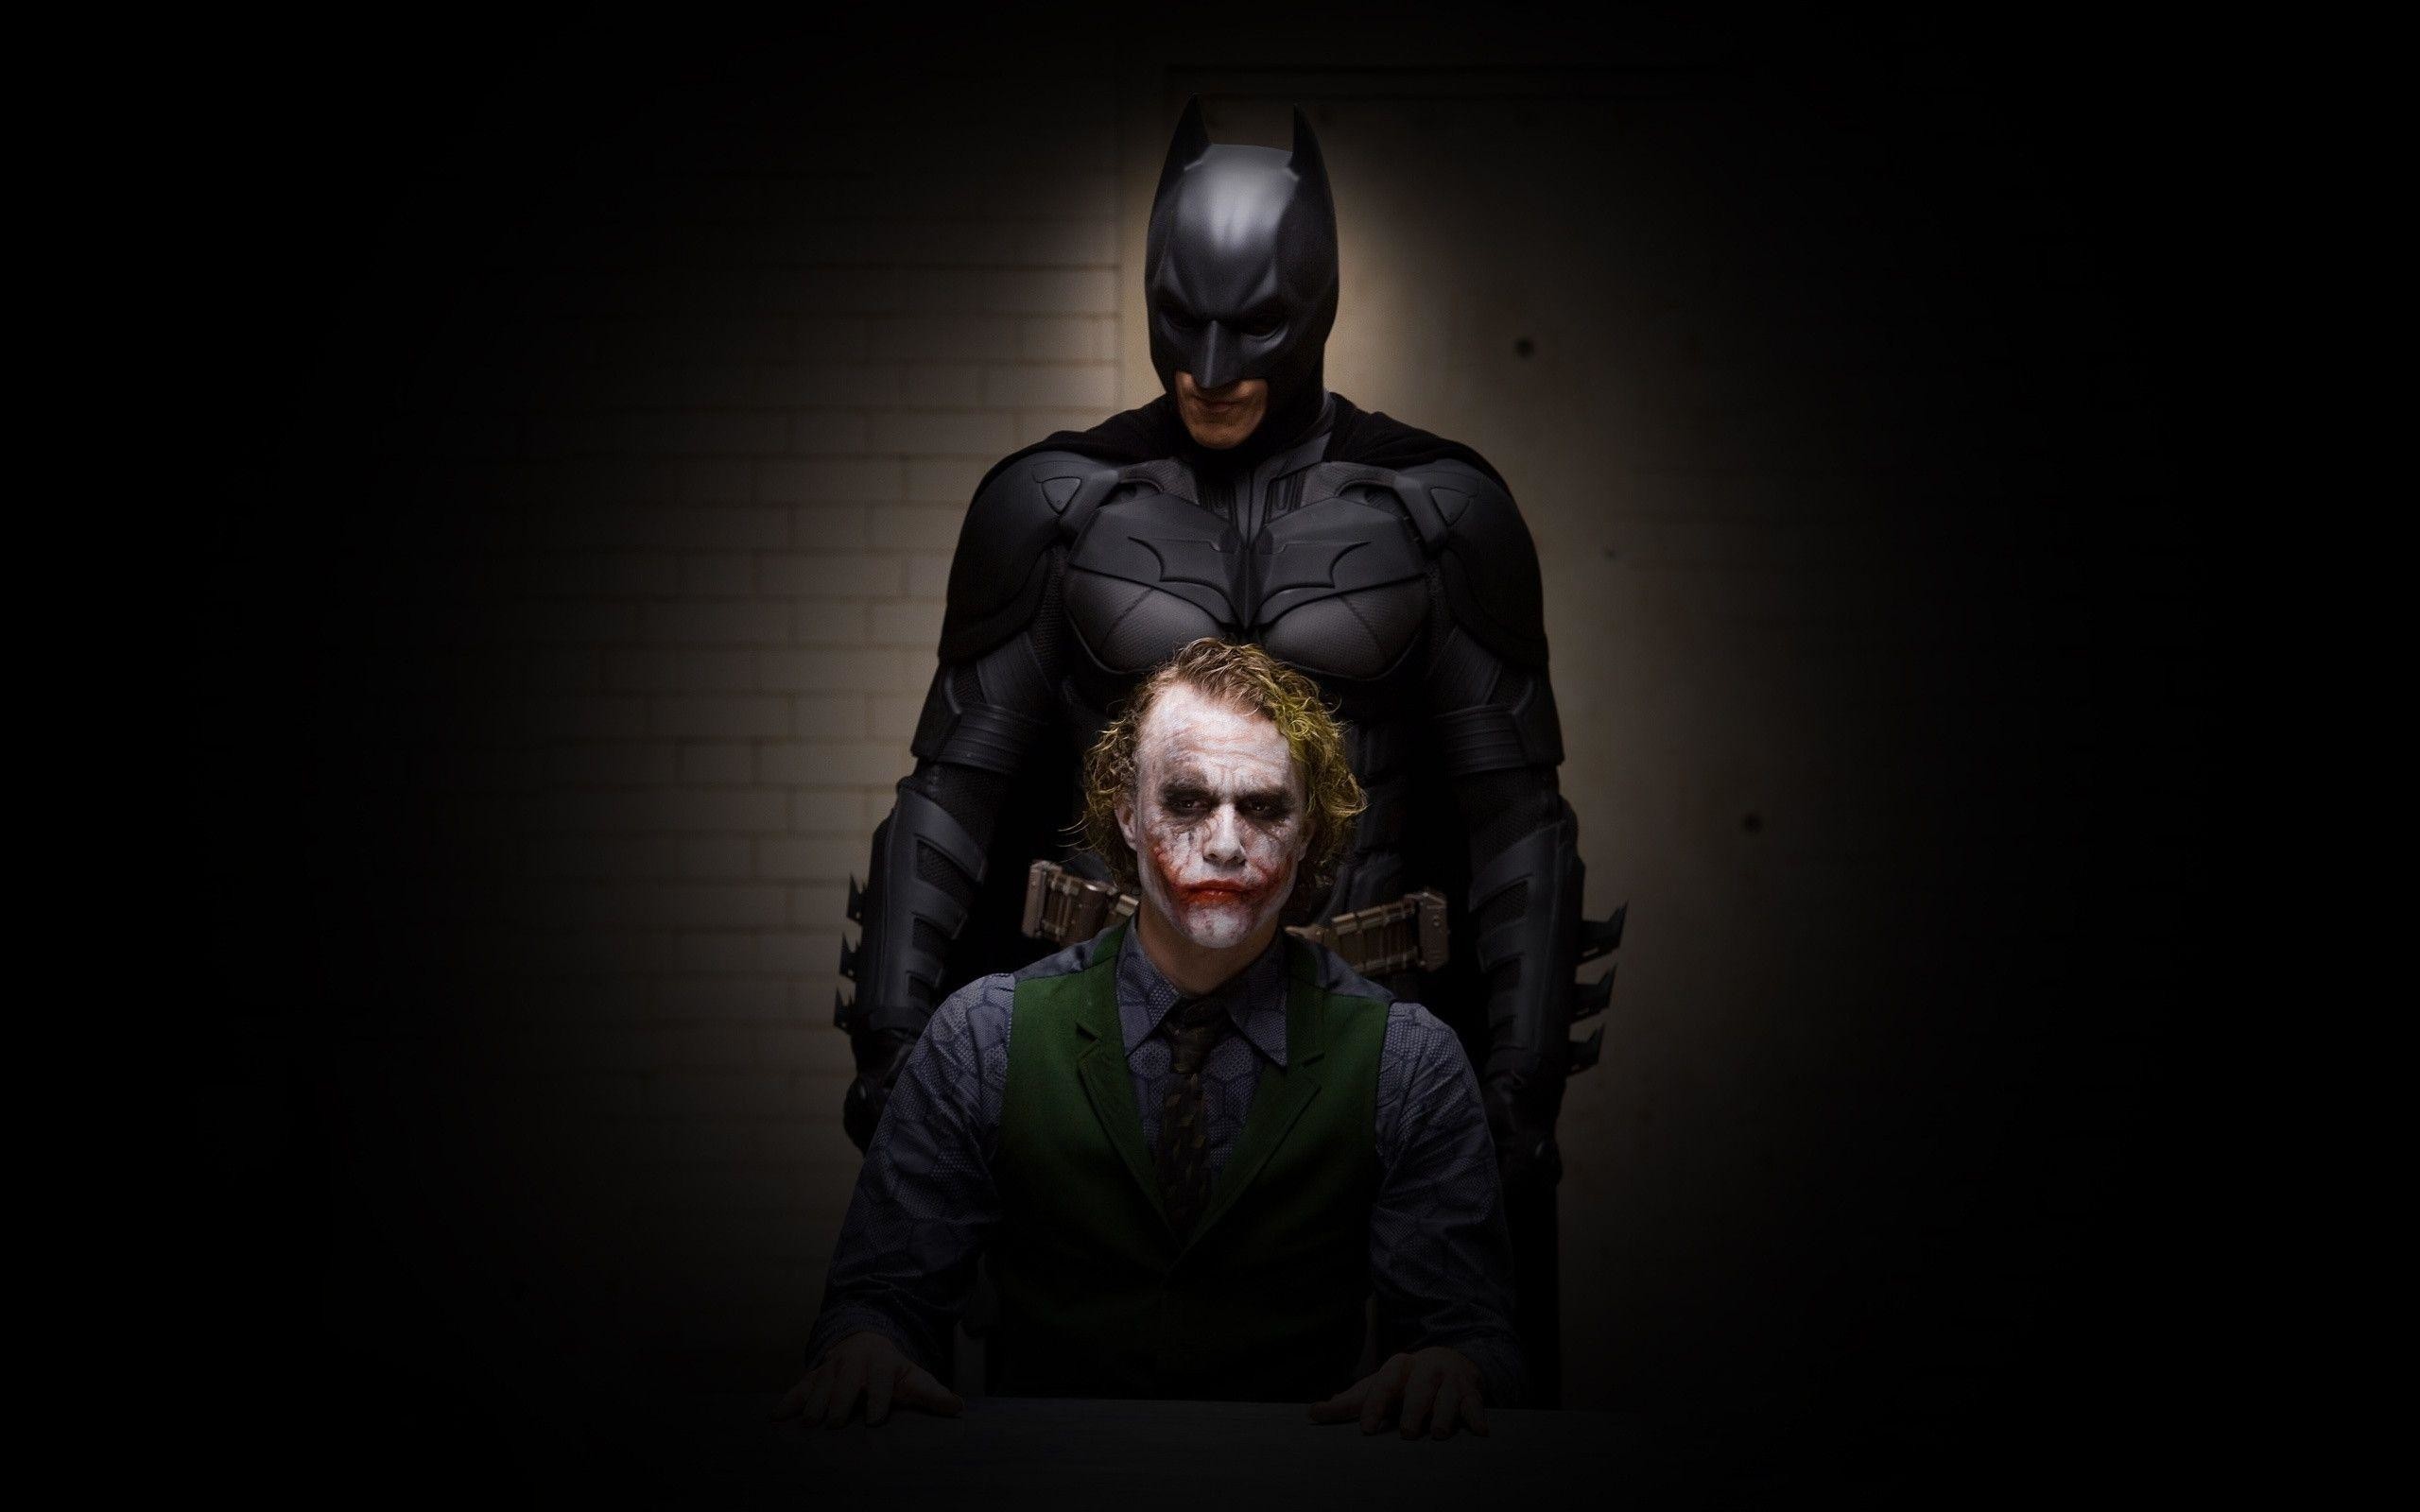 2560x1600 Wallpaper Batman Joker Dark The Dark Knight image - vector clip .